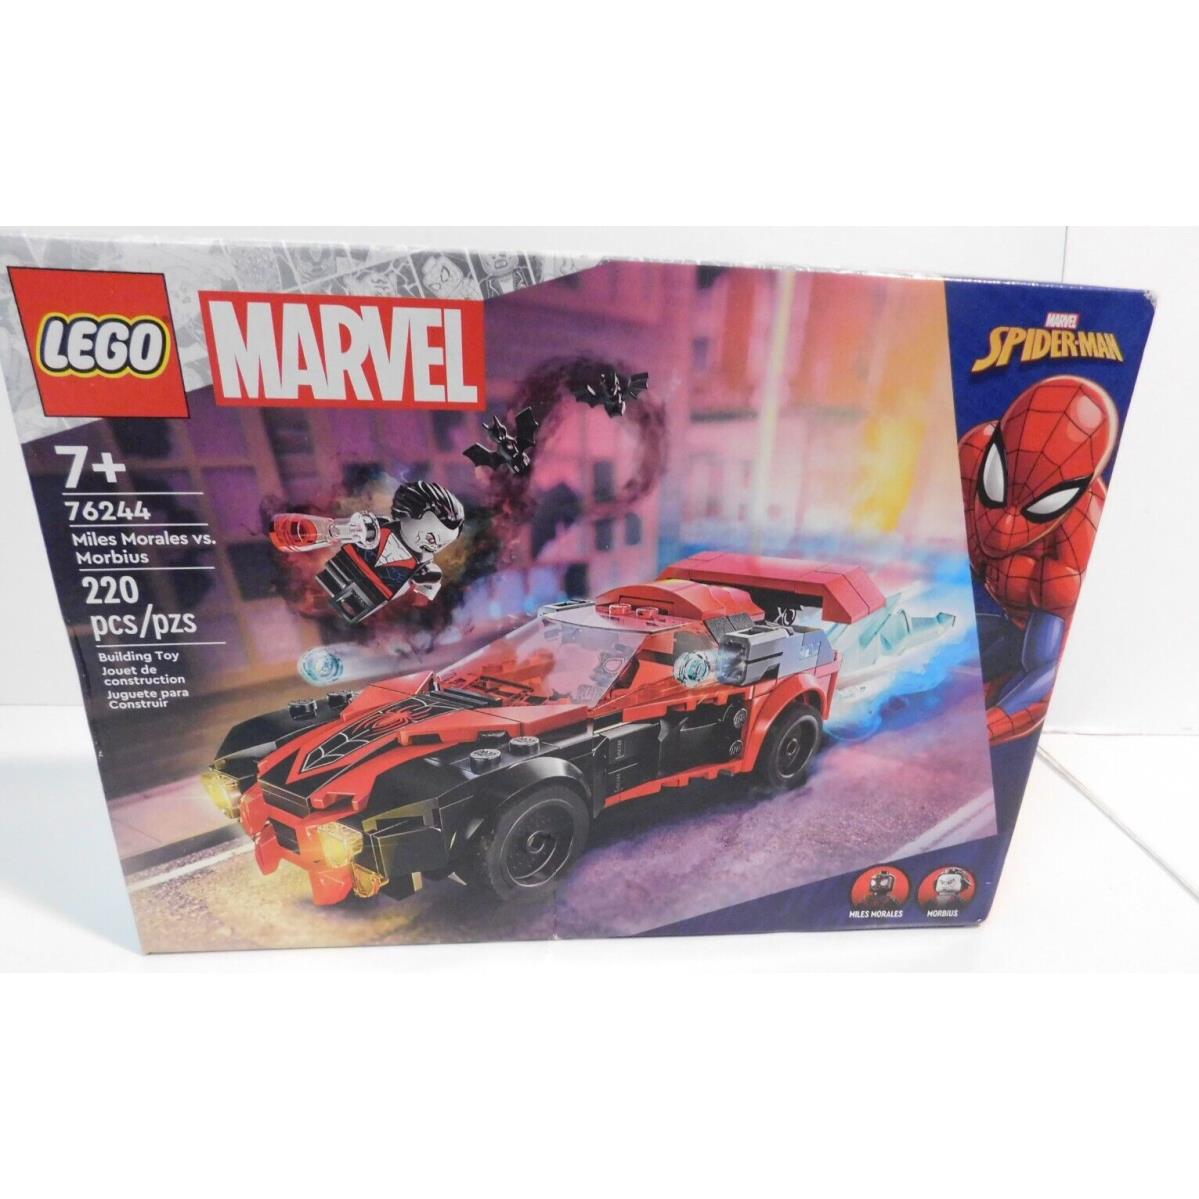 Lego Marvel 76244 Miles Morales Vs. Morbius 220 Pieces